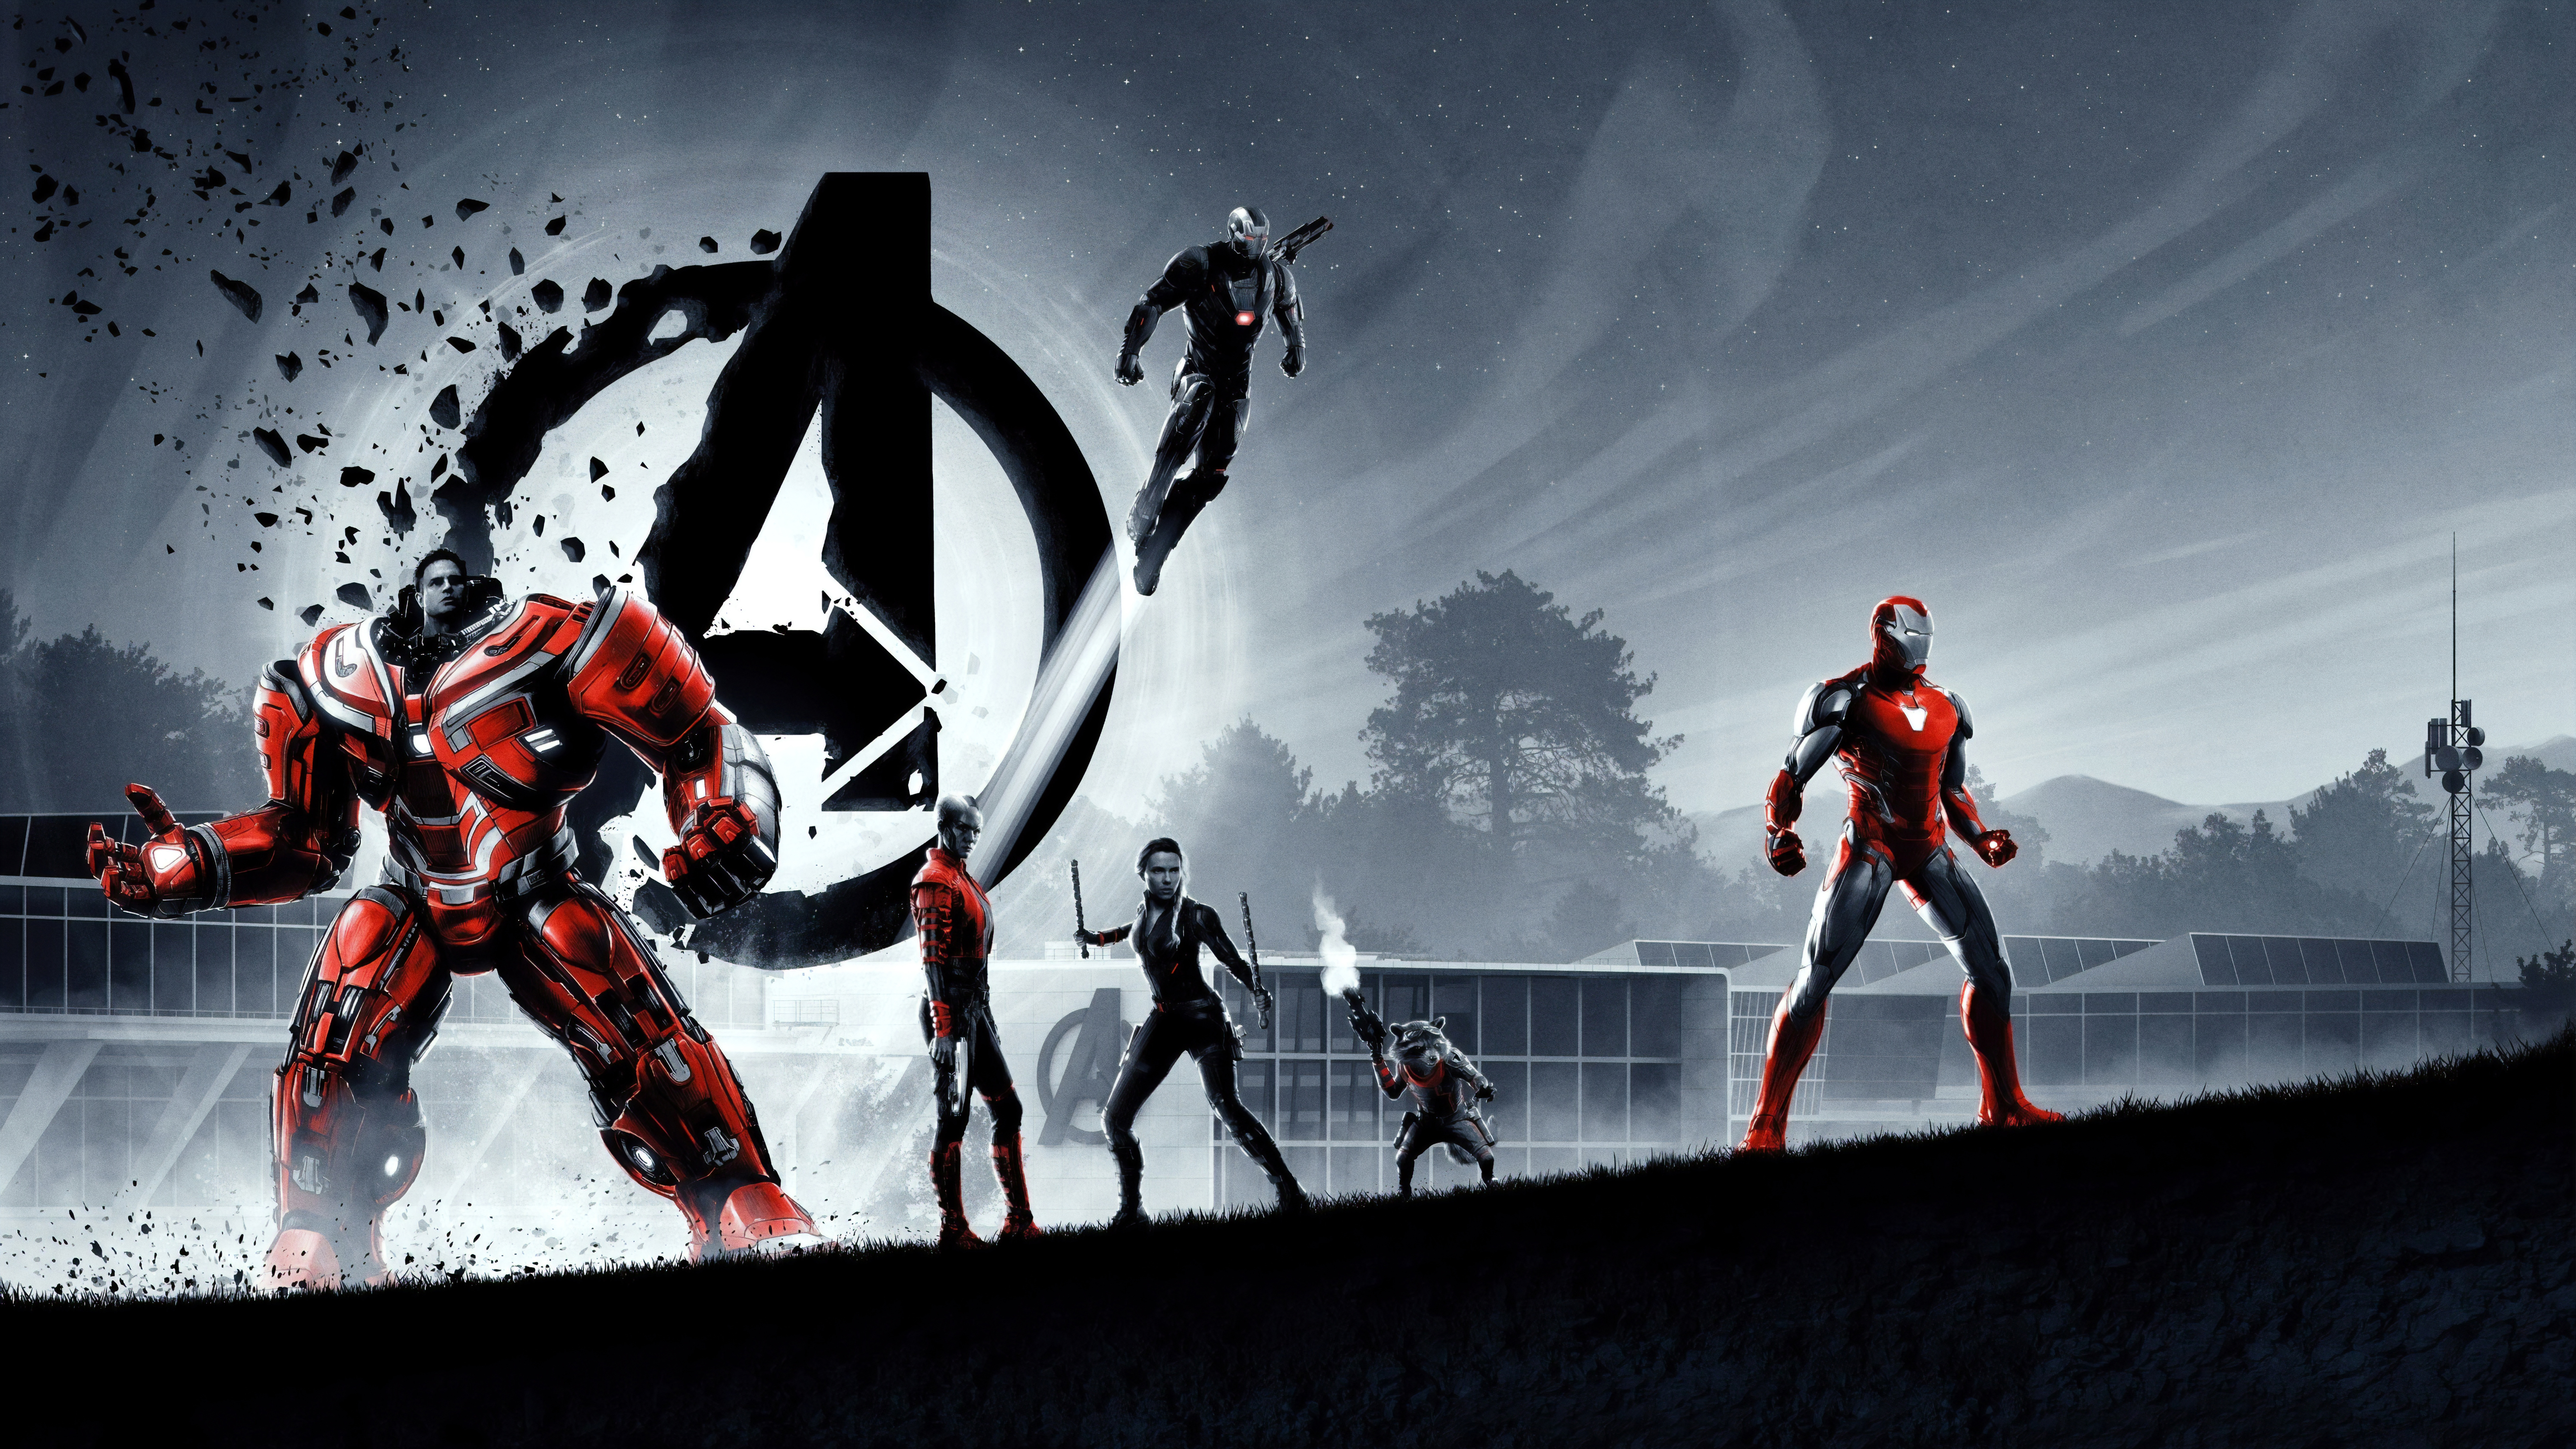 Iron Man Avengers Endgame 4K 8K Wallpapers